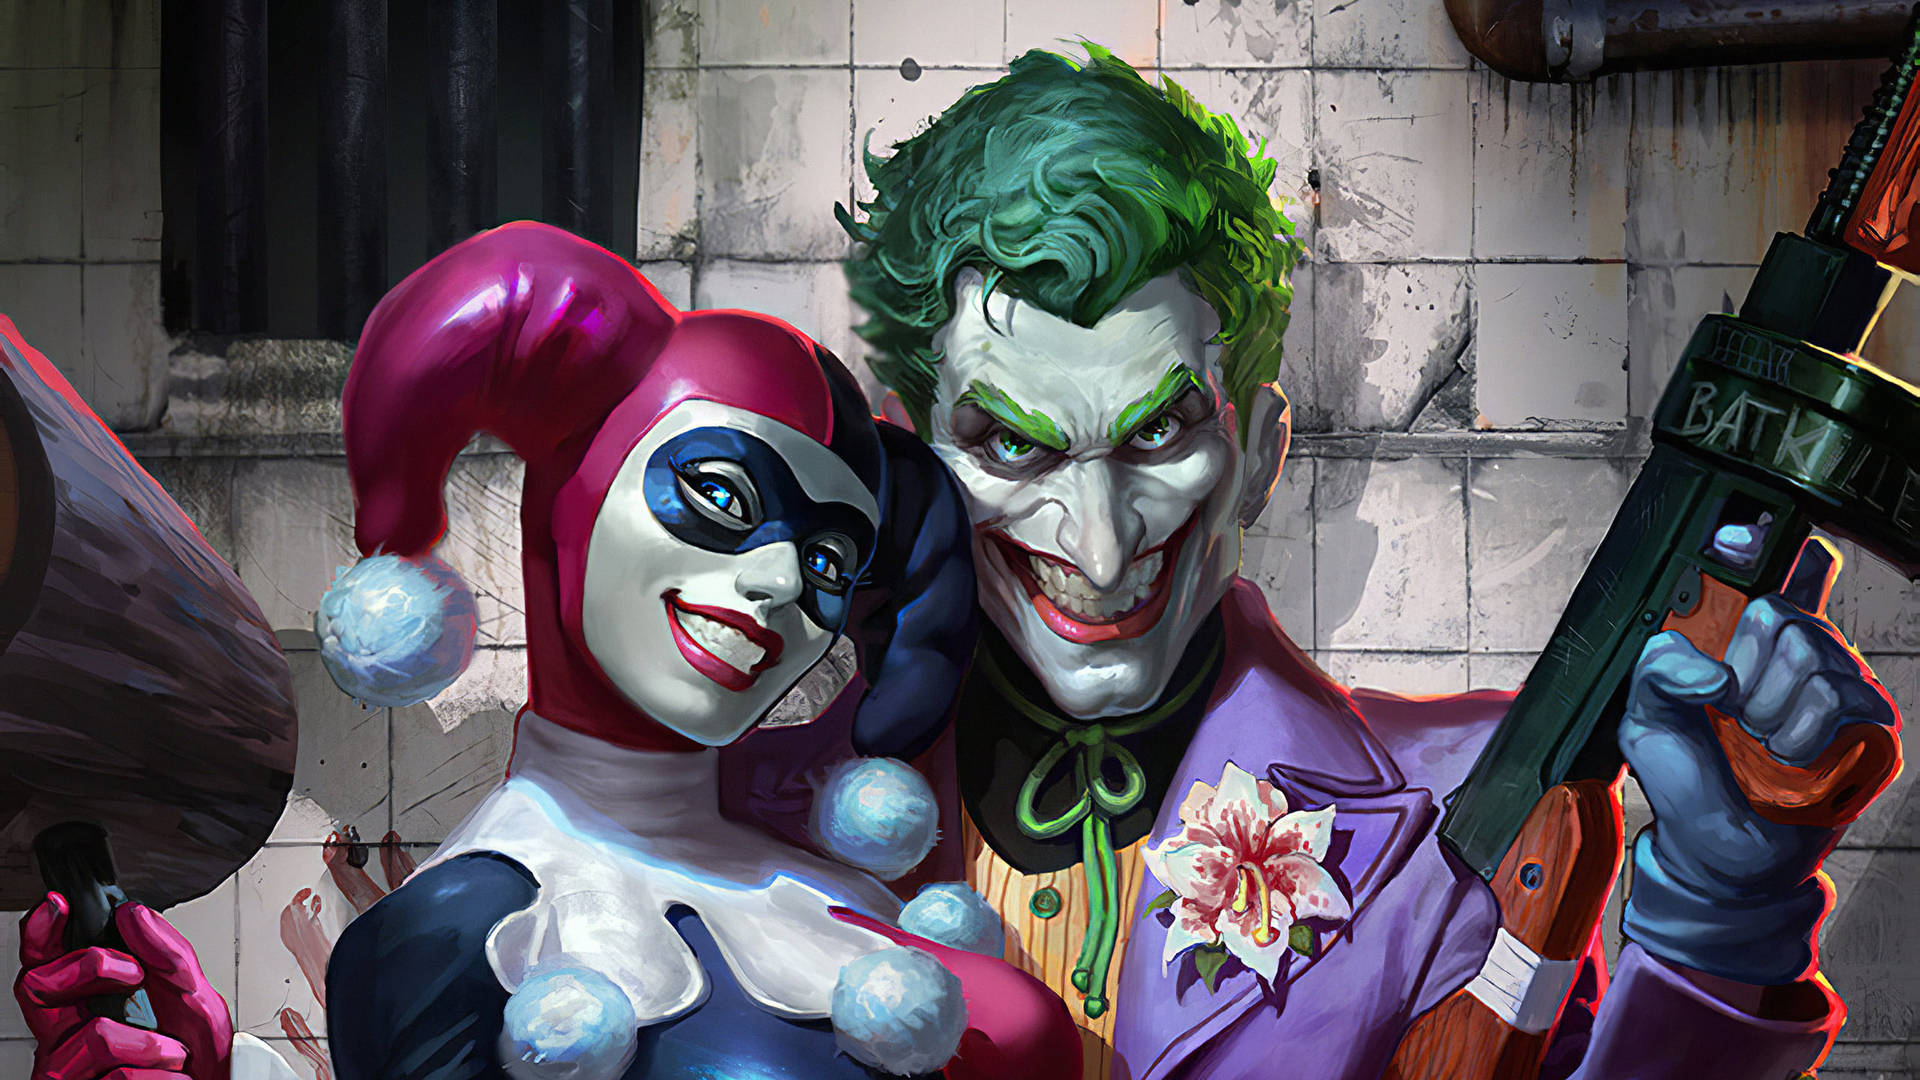 Free Joker And Harley Quinn Wallpaper Downloads, [100+] Joker And Harley  Quinn Wallpapers for FREE 